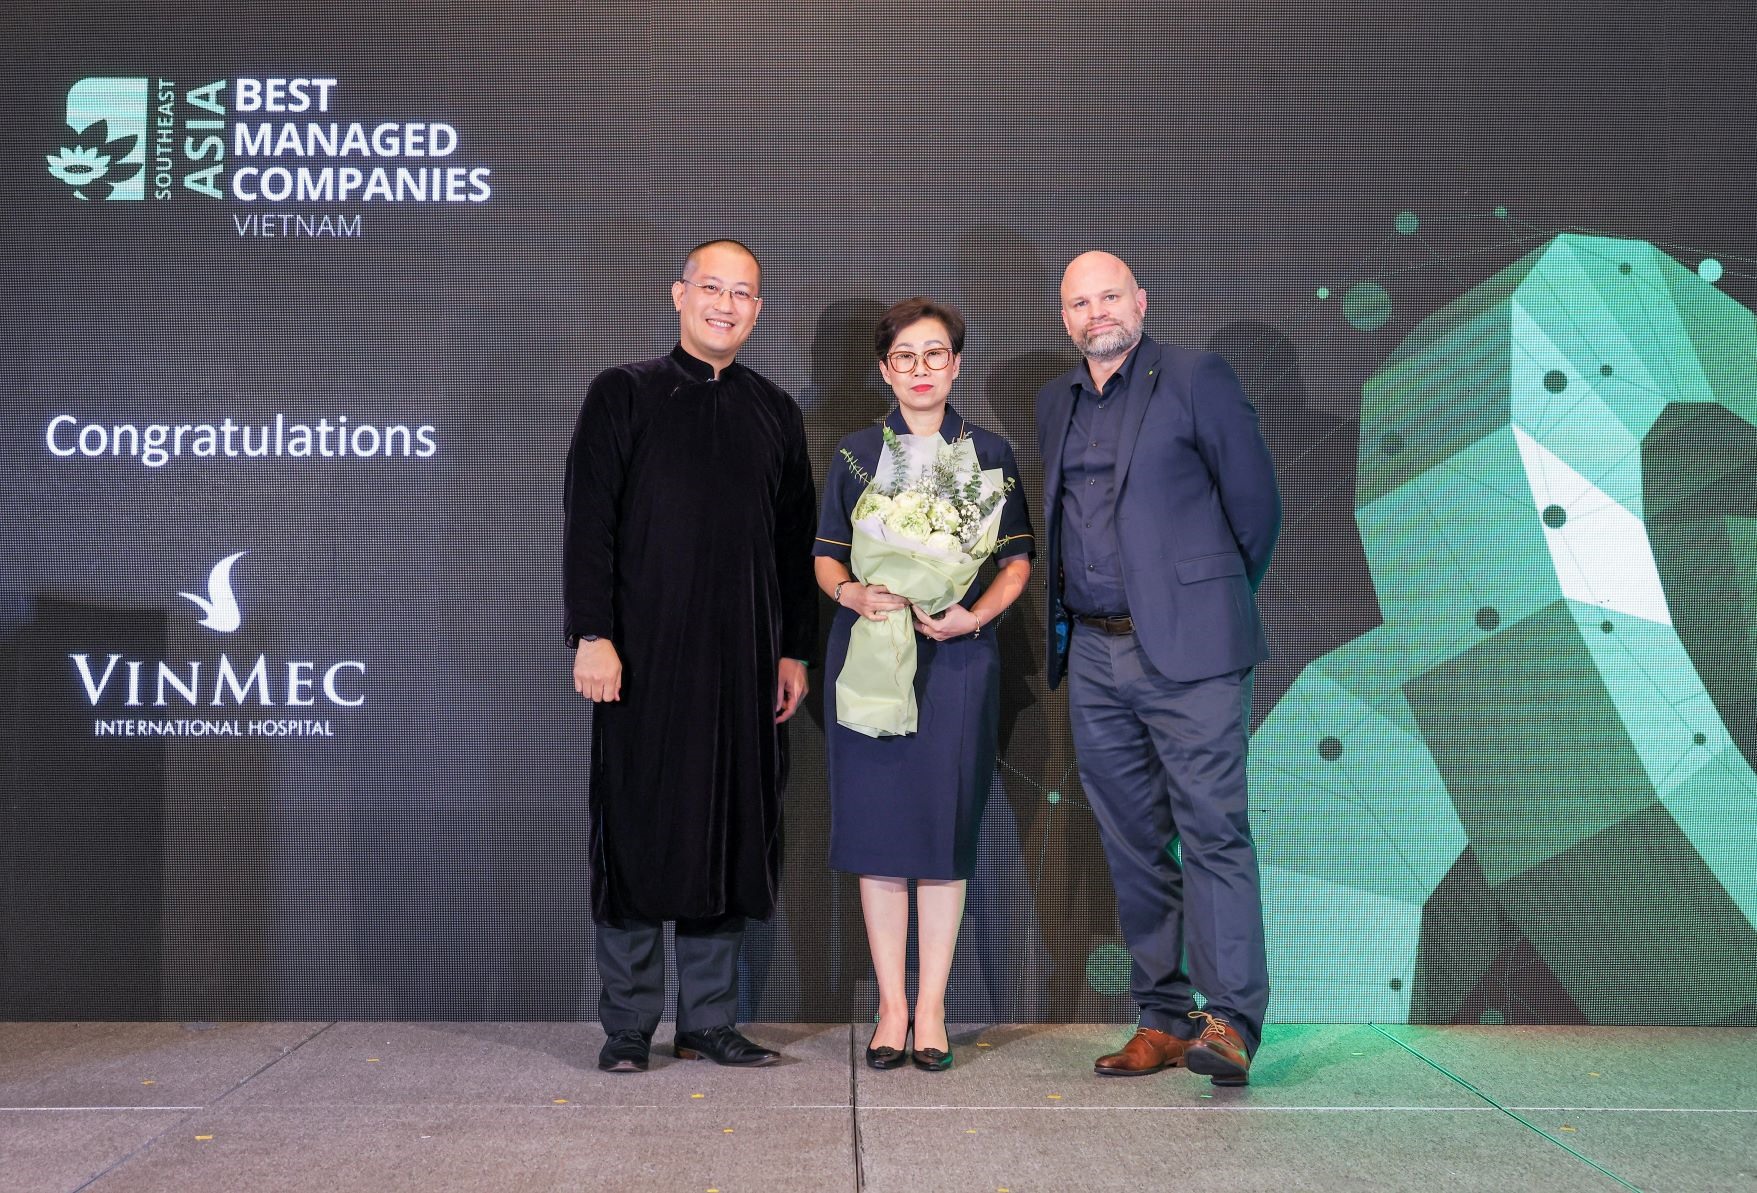 Vinmec là đơn vị y tế duy nhất được nhận danh hiệu Best Managed Companies - Doanh nghiệp được Quản trị Tốt nhất tại Việt Nam năm 2022.